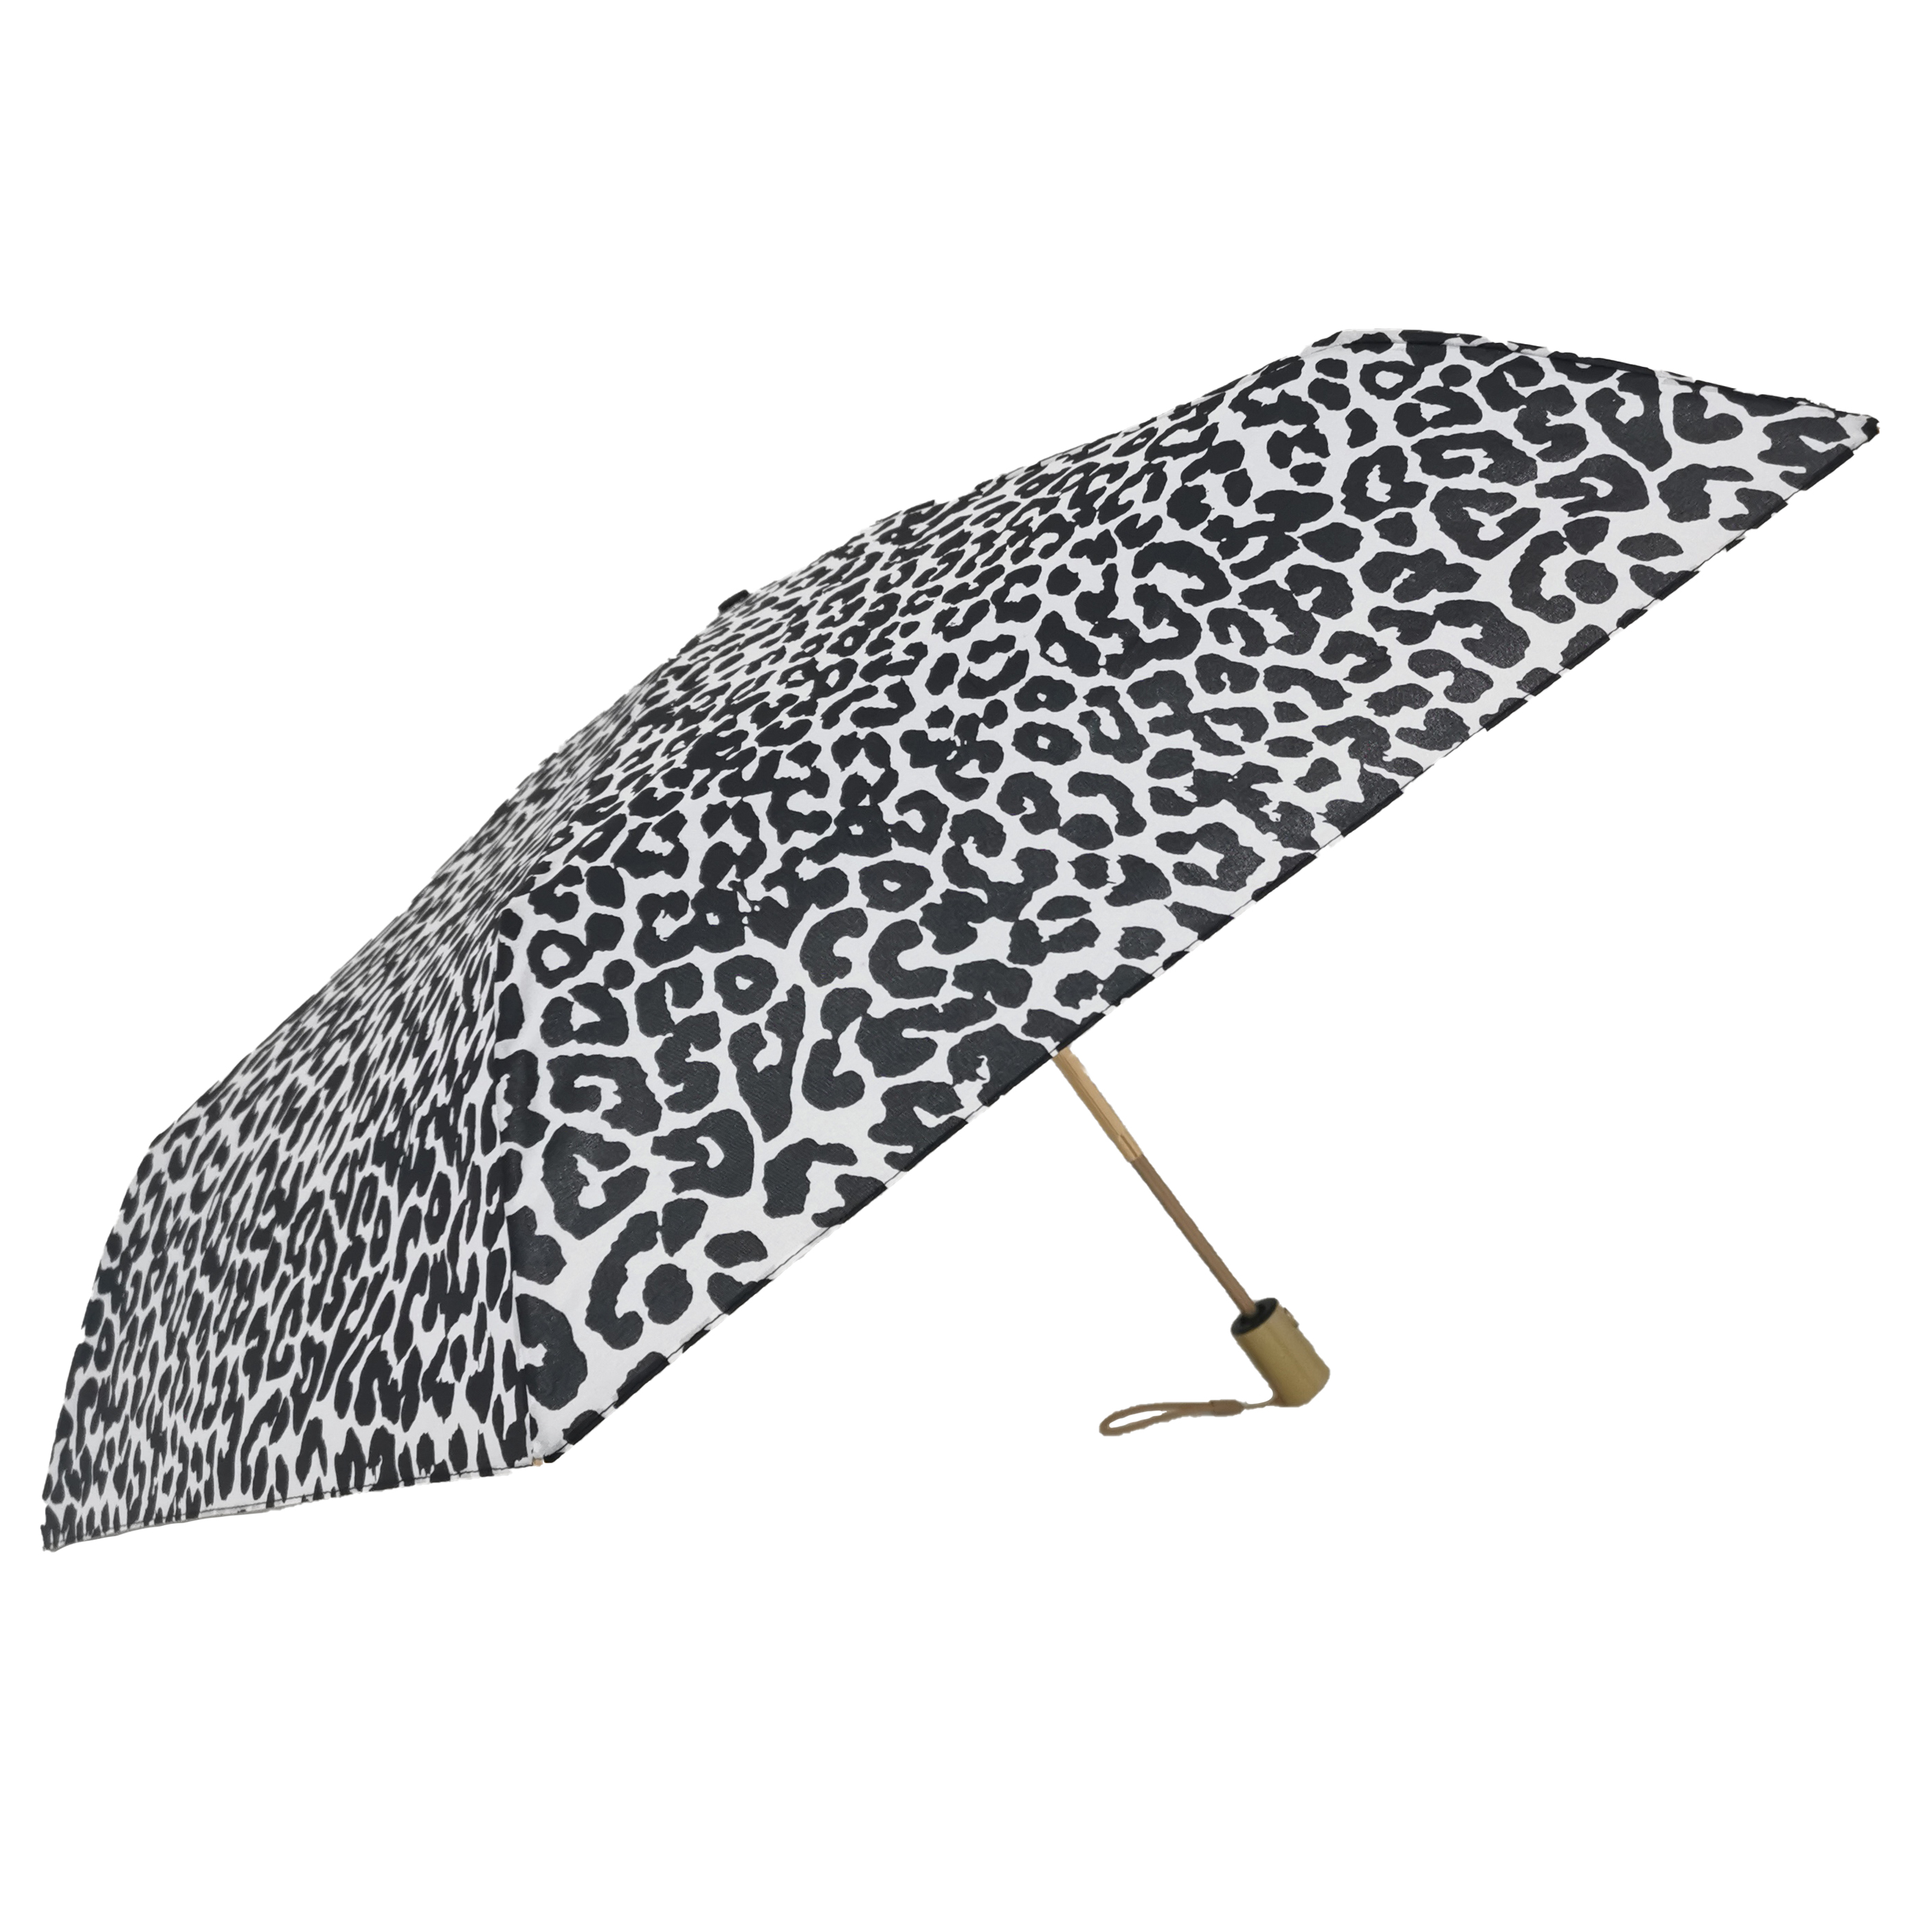 https://www.hodaumbrella.com/3-sekcyjny-składany-umbrellasafe-automatic-system-product/